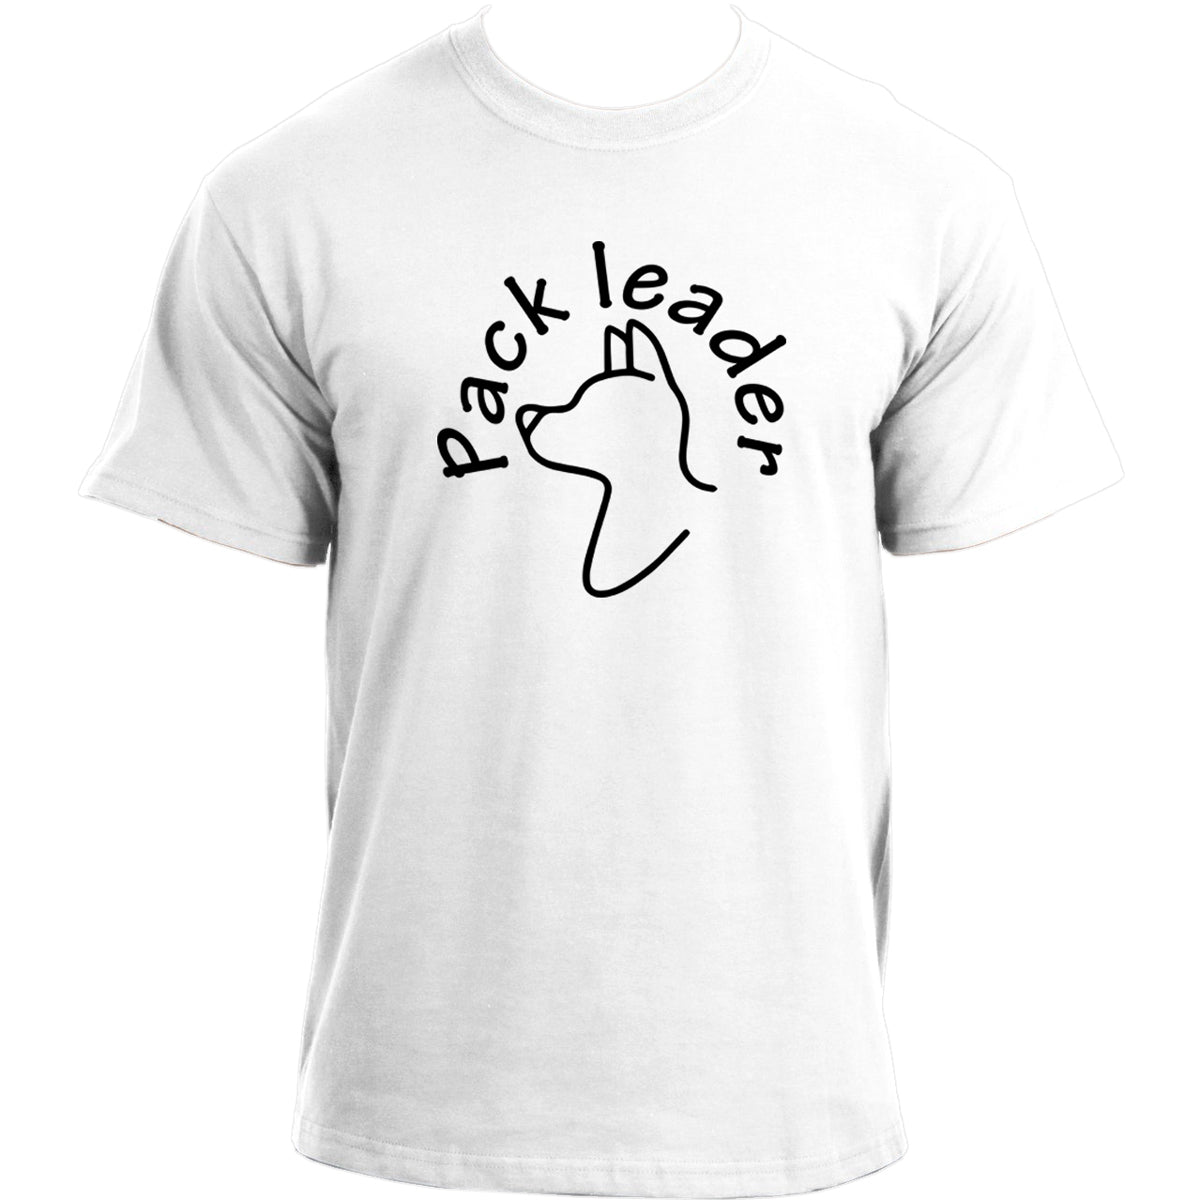 Pack leader Dog T-shirt I Dog Owner TShirt I Dog Dad Funny T-shirts For Men